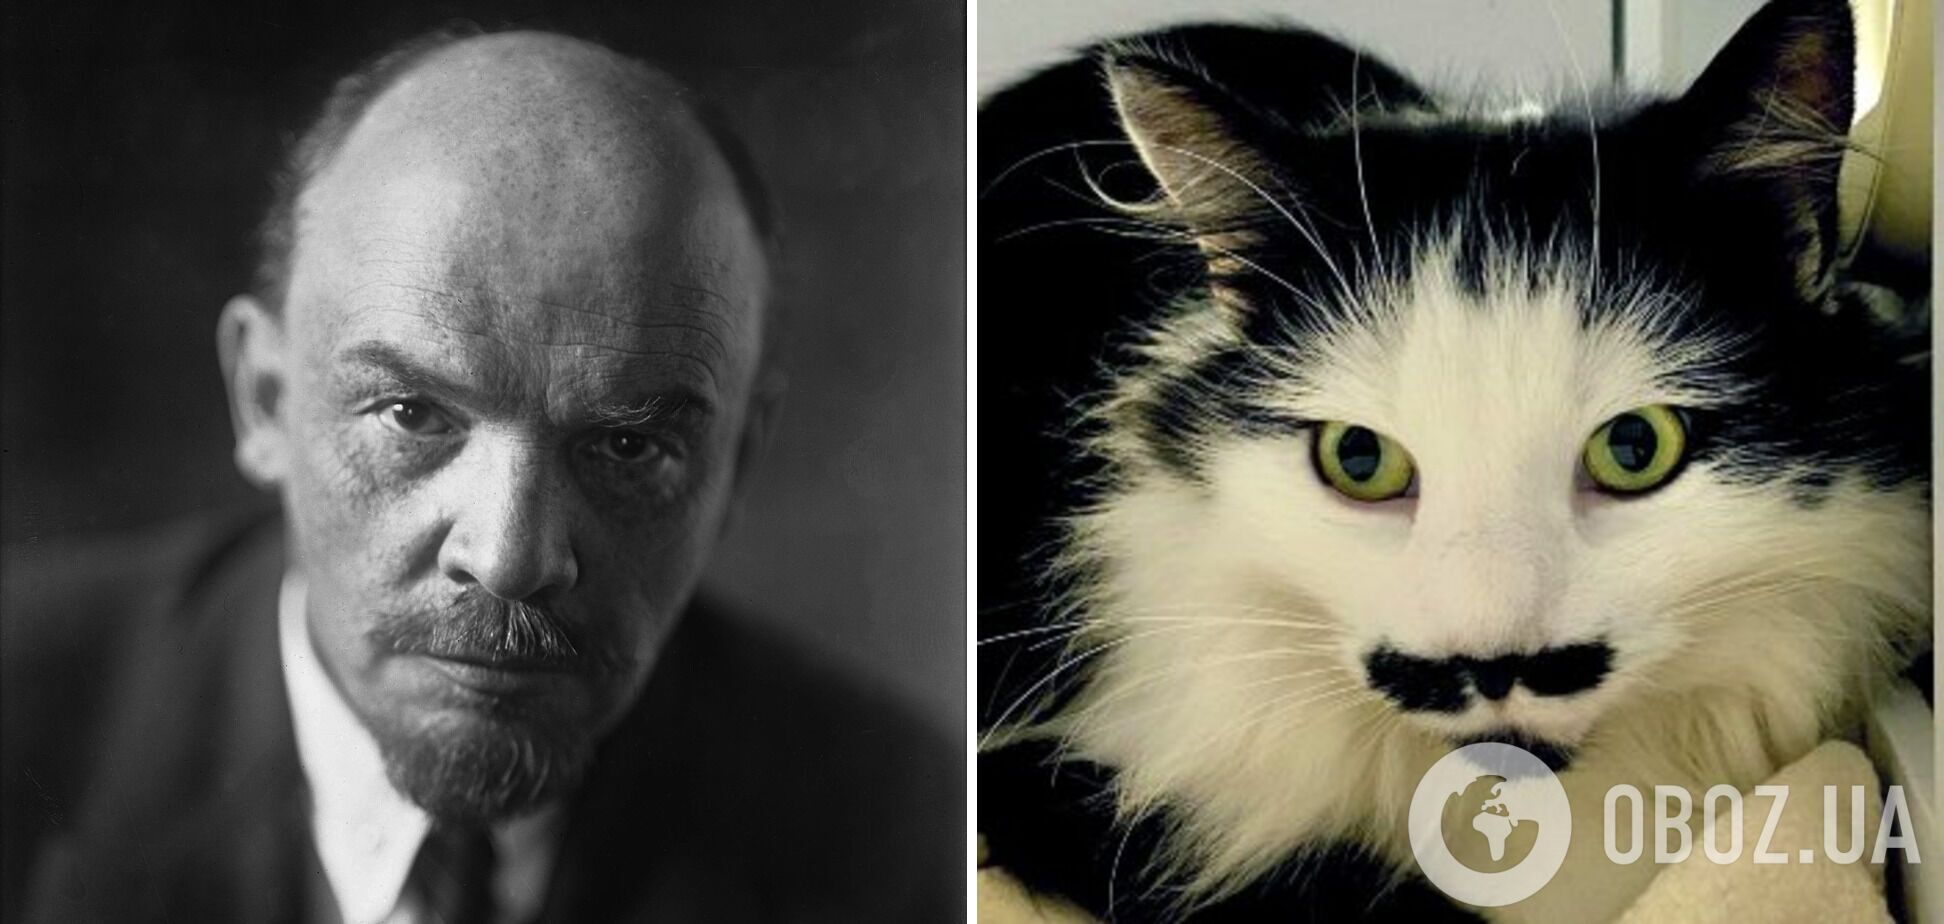 Кошку сравнили с Лениным из-за усов.